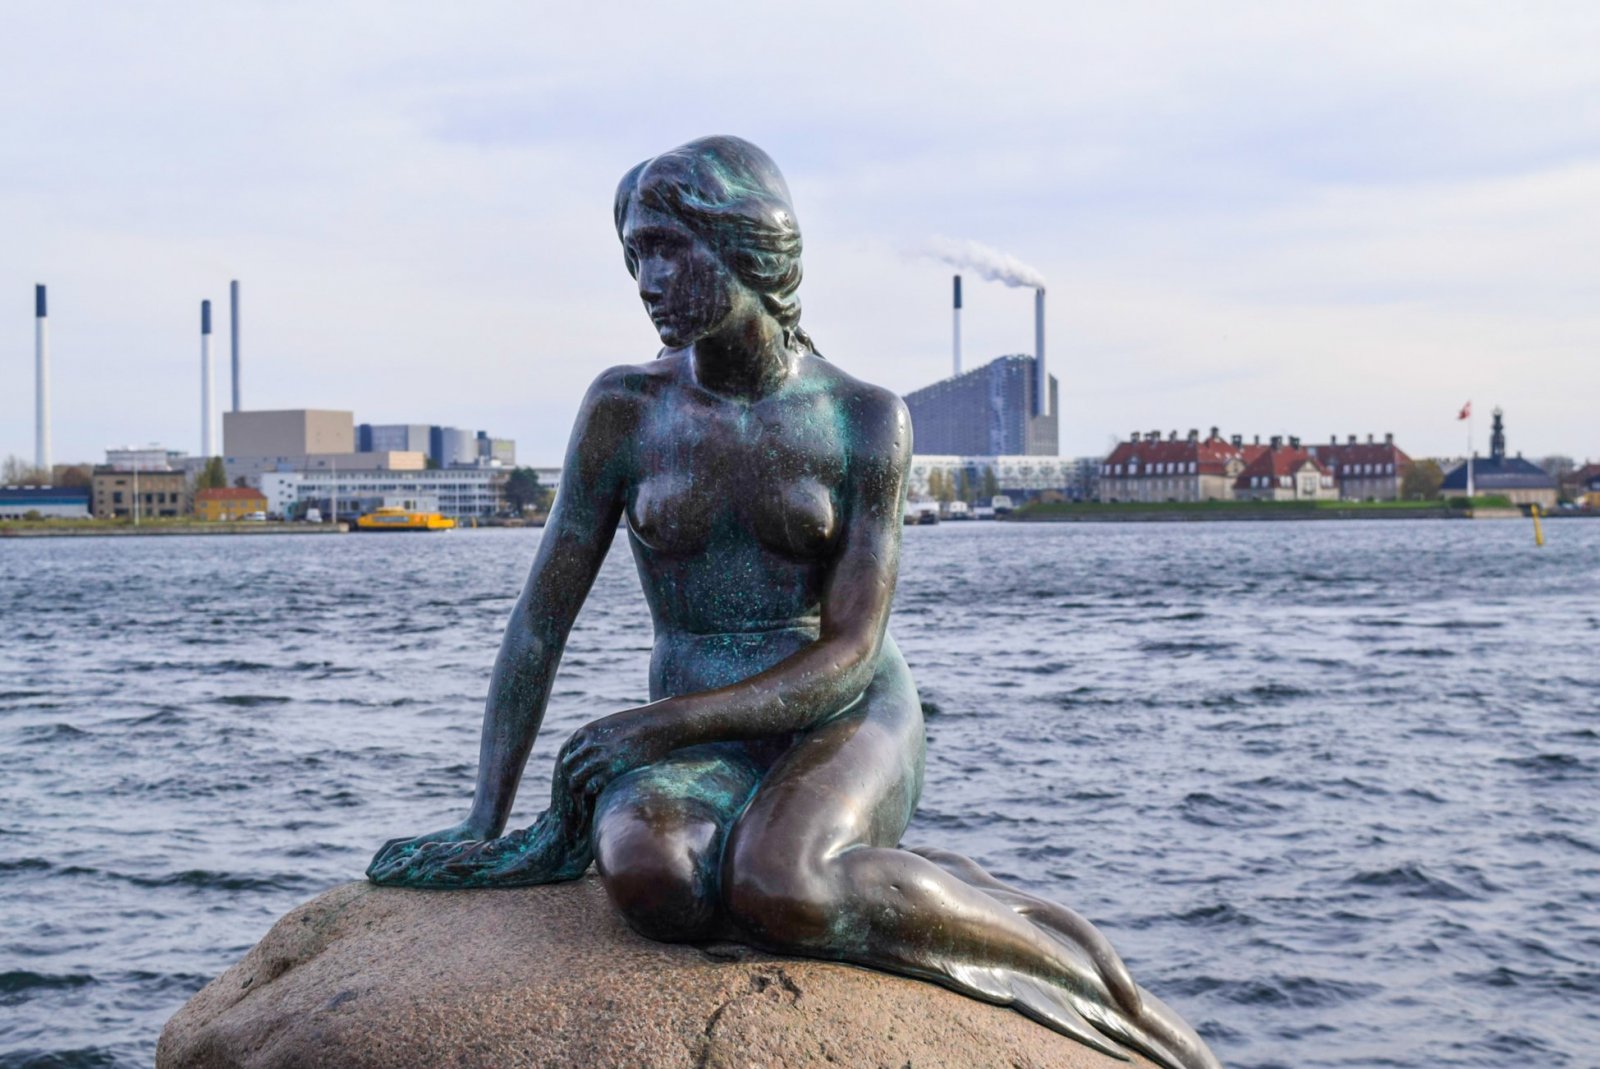 Δανία - Σουηδία - Στη χώρα της Μικρής Γοργόνας! | Travelstories